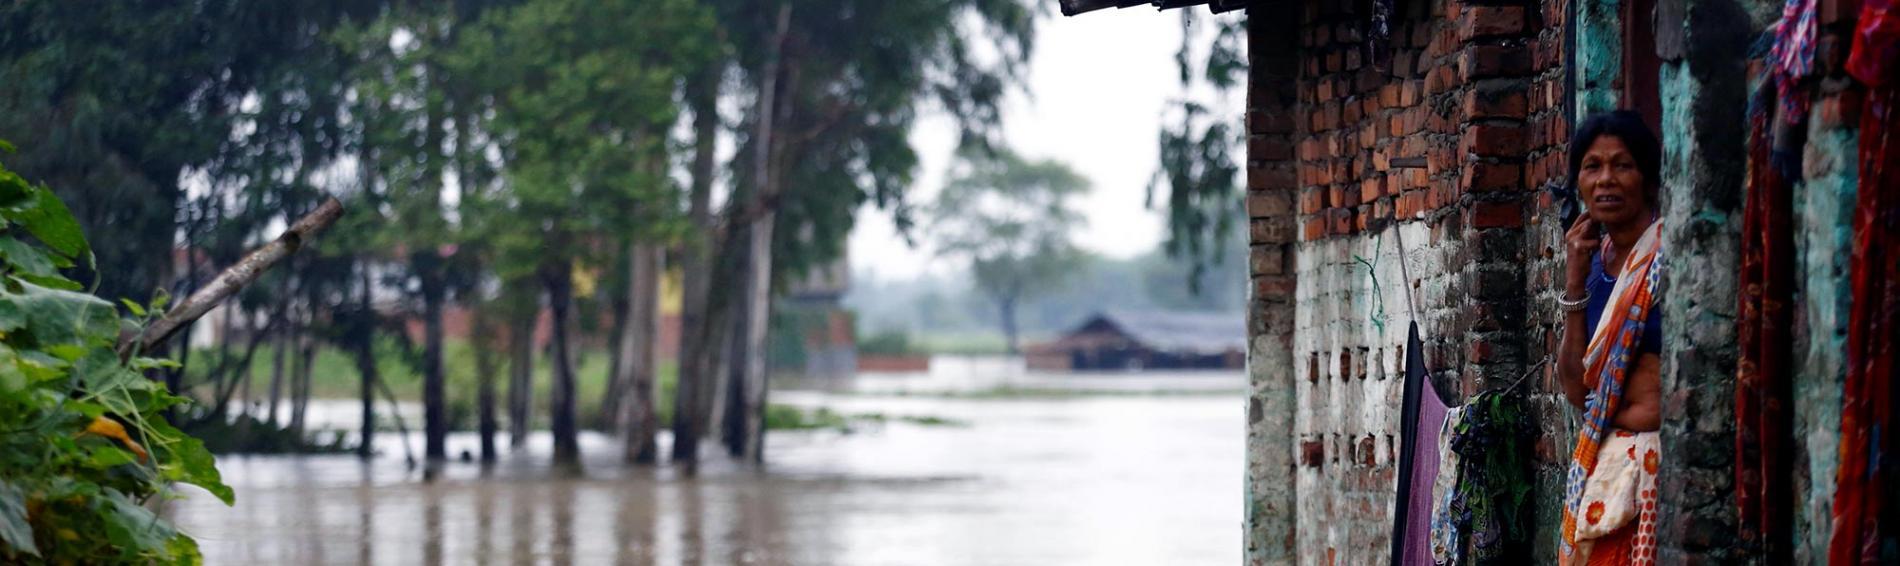 Nepalesin in überfluteter Landschaft